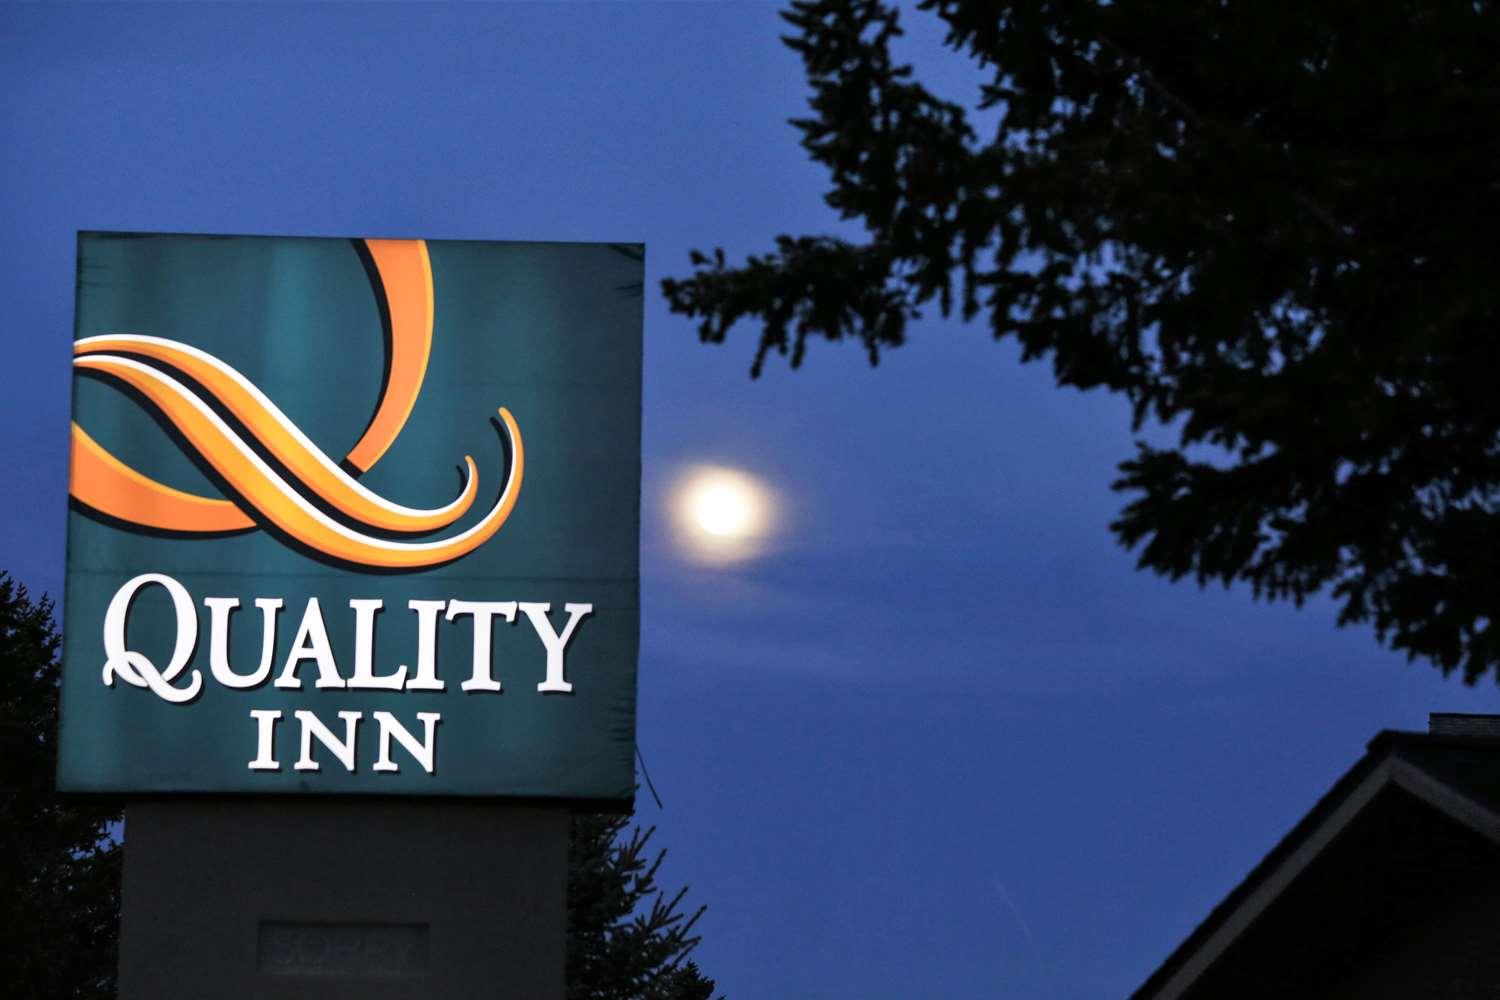 Quality Inn - Rocky Mt Ntnl Park in Estes Park, CO